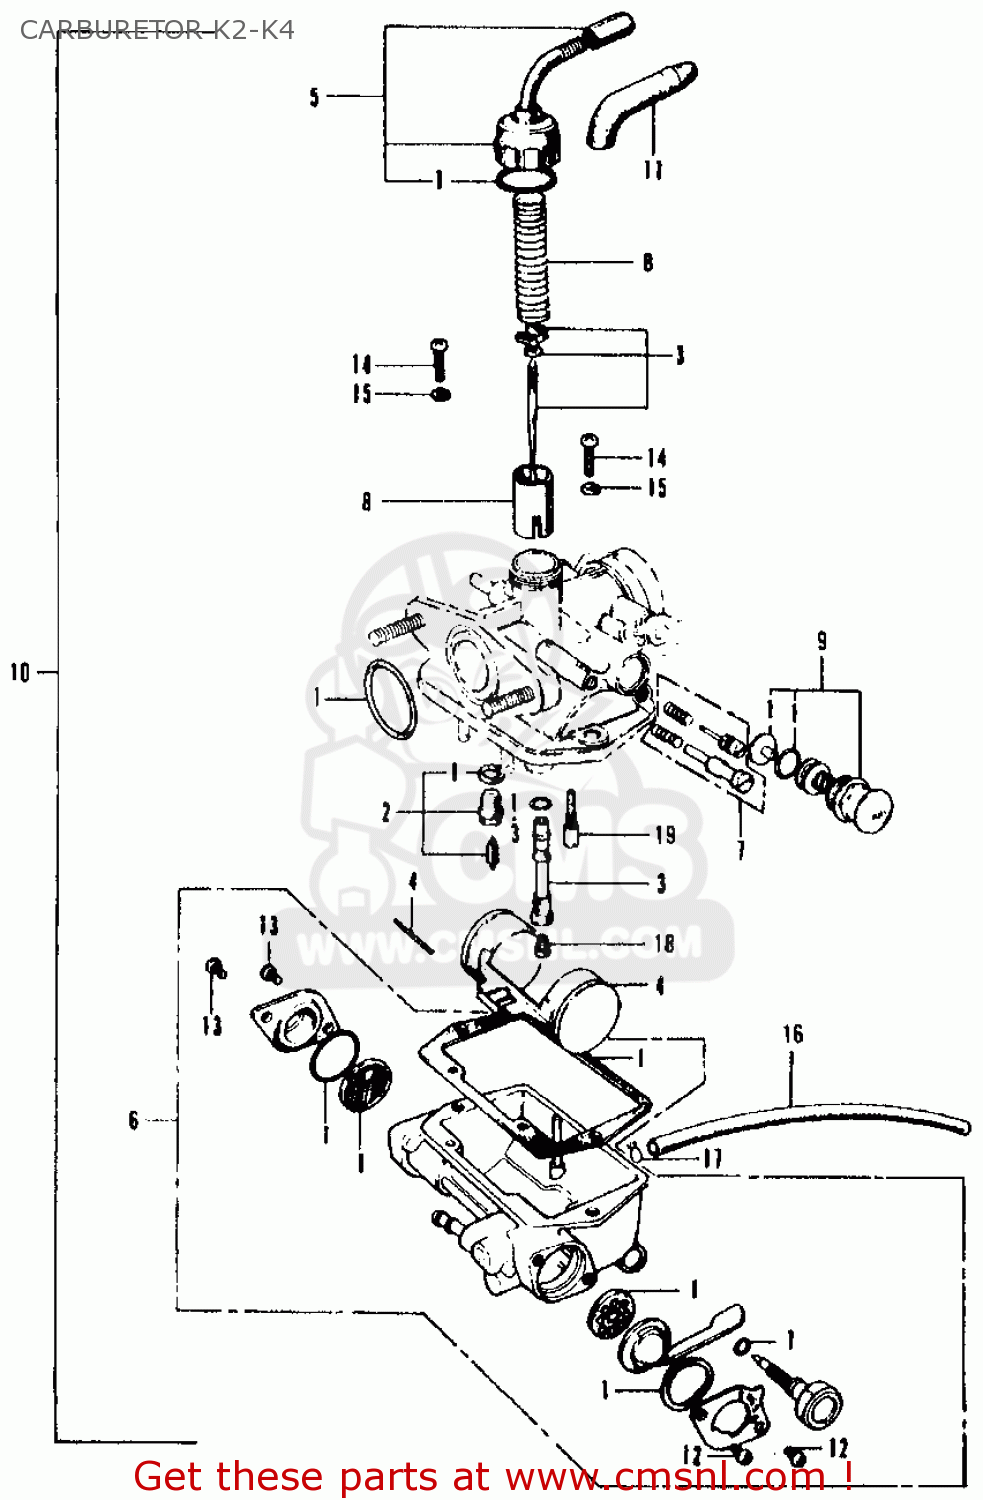 New Carburetor Fit for Honda CT 90 CT90 Trail 1976 1977 90 K2 K3 K4 1970 1971 1972 Carb 